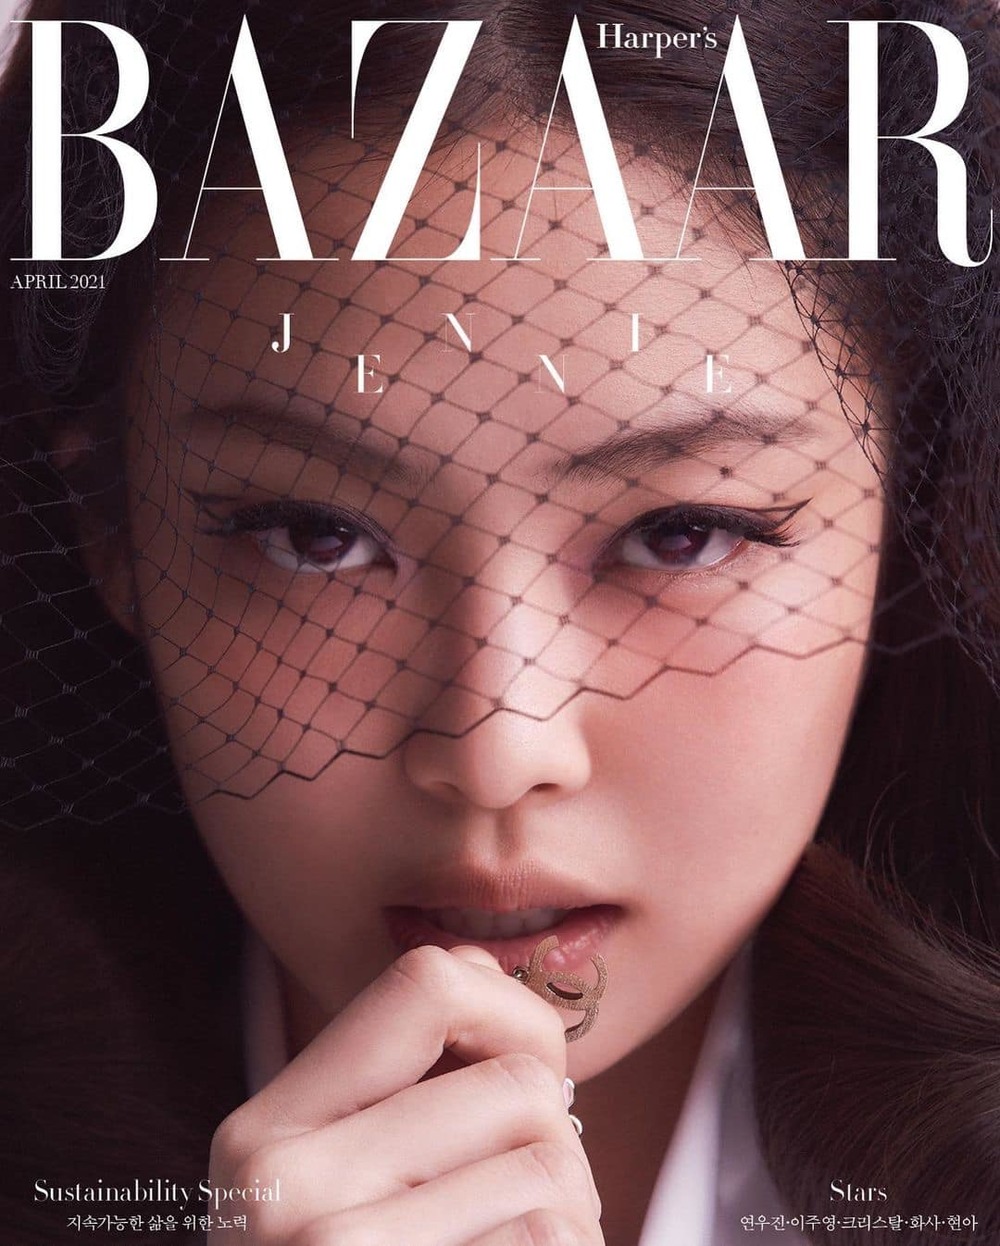  
Jennie trên bìa tạp chí tháng 4. (Ảnh: Harper’s Bazaar)